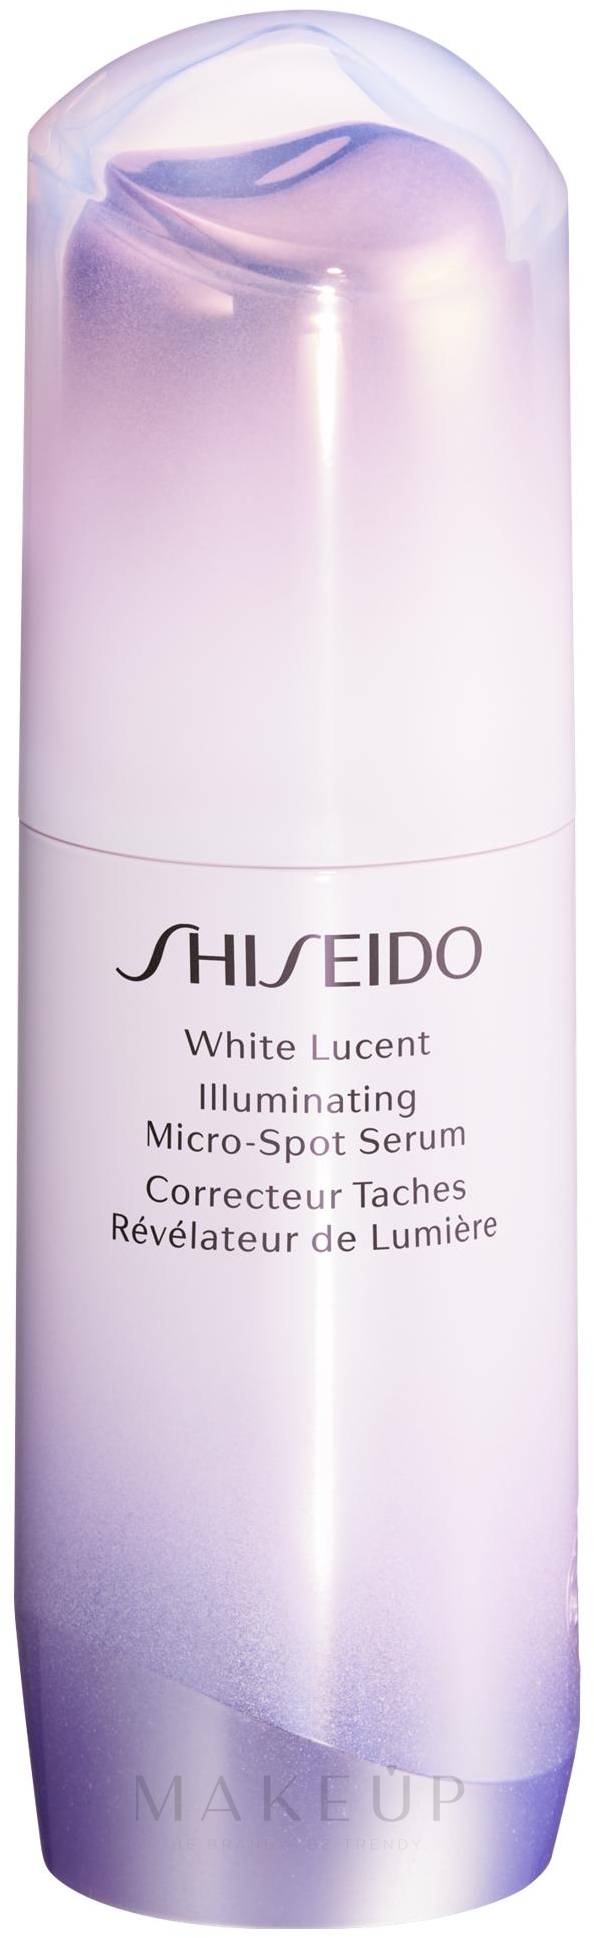 Aufhellendes Anti-Aging Gesichtsserum gegen Pigmentflecken - Shiseido White Lucent Illuminating Micro-Spot Serum — Bild 30 ml